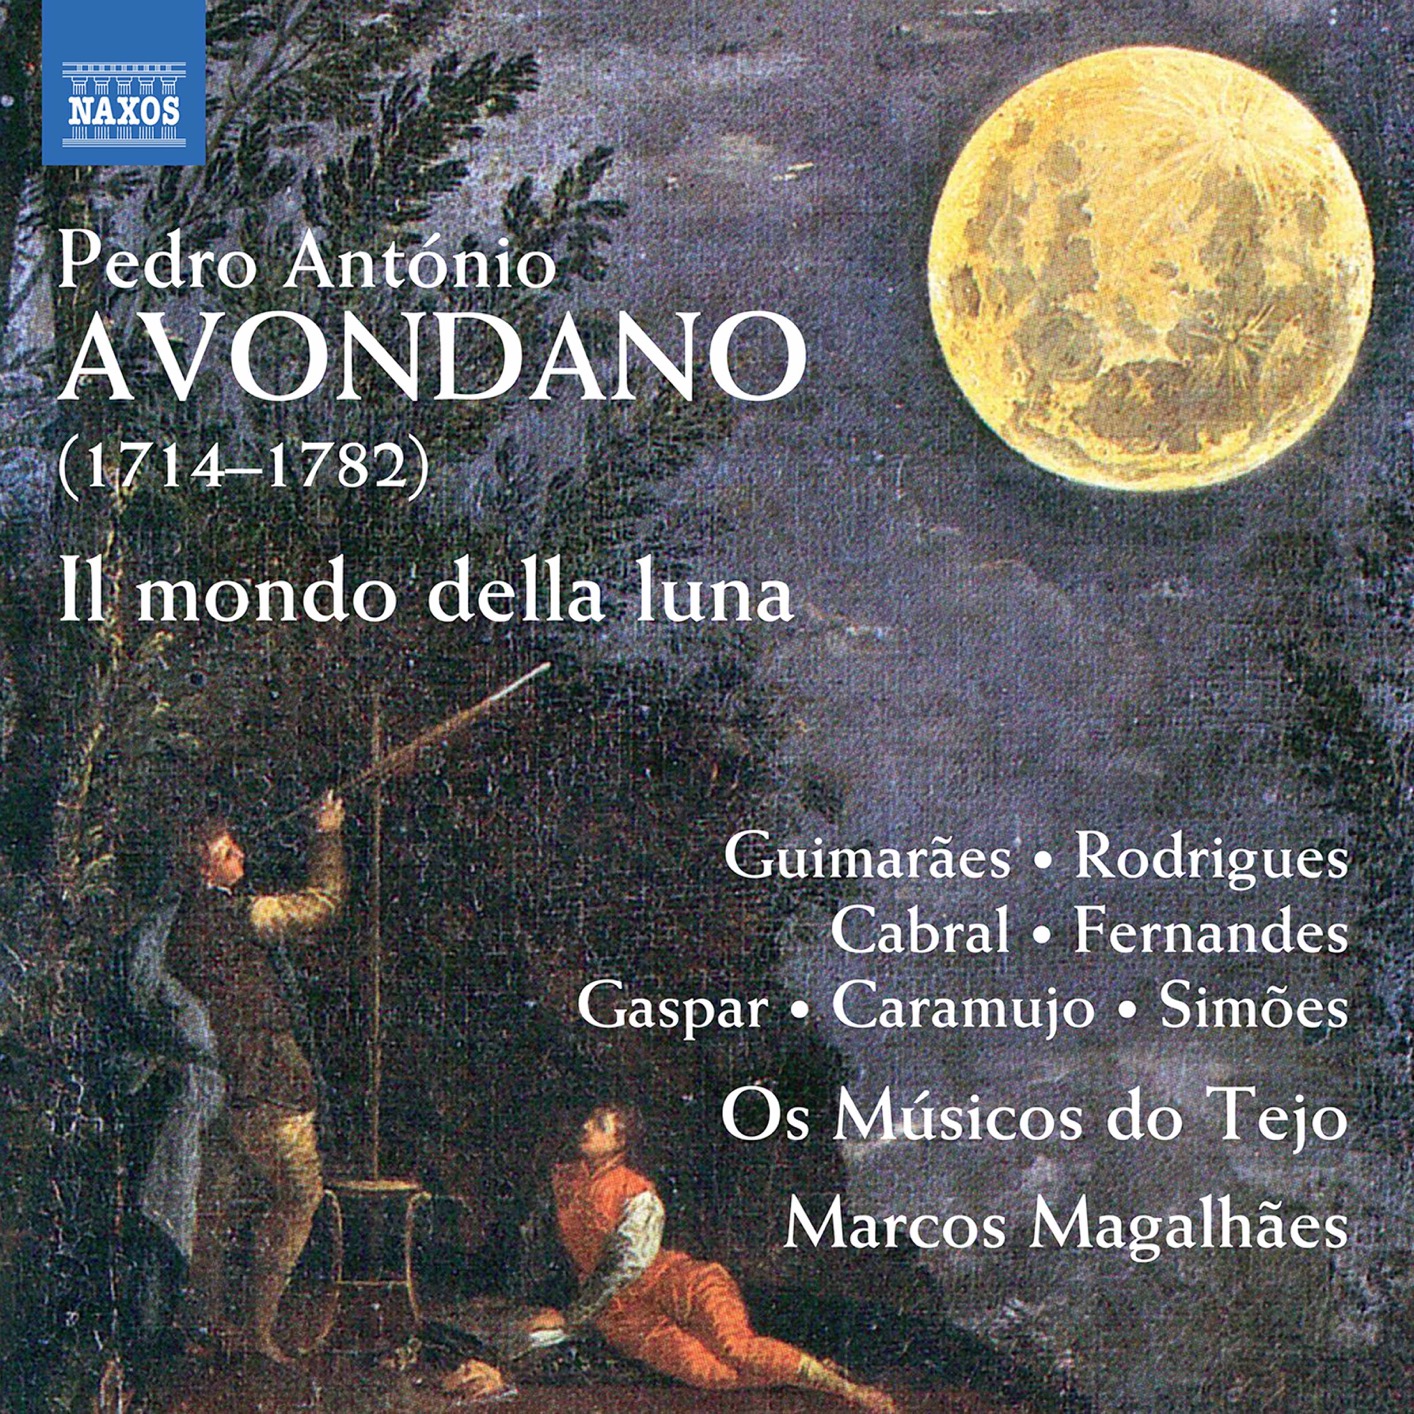 Marcos Magalhaes, Os Musicos do Tejo - Avondano: Il mondo della luna (Excerpts) (2020) [FLAC 24bit/48kHz]